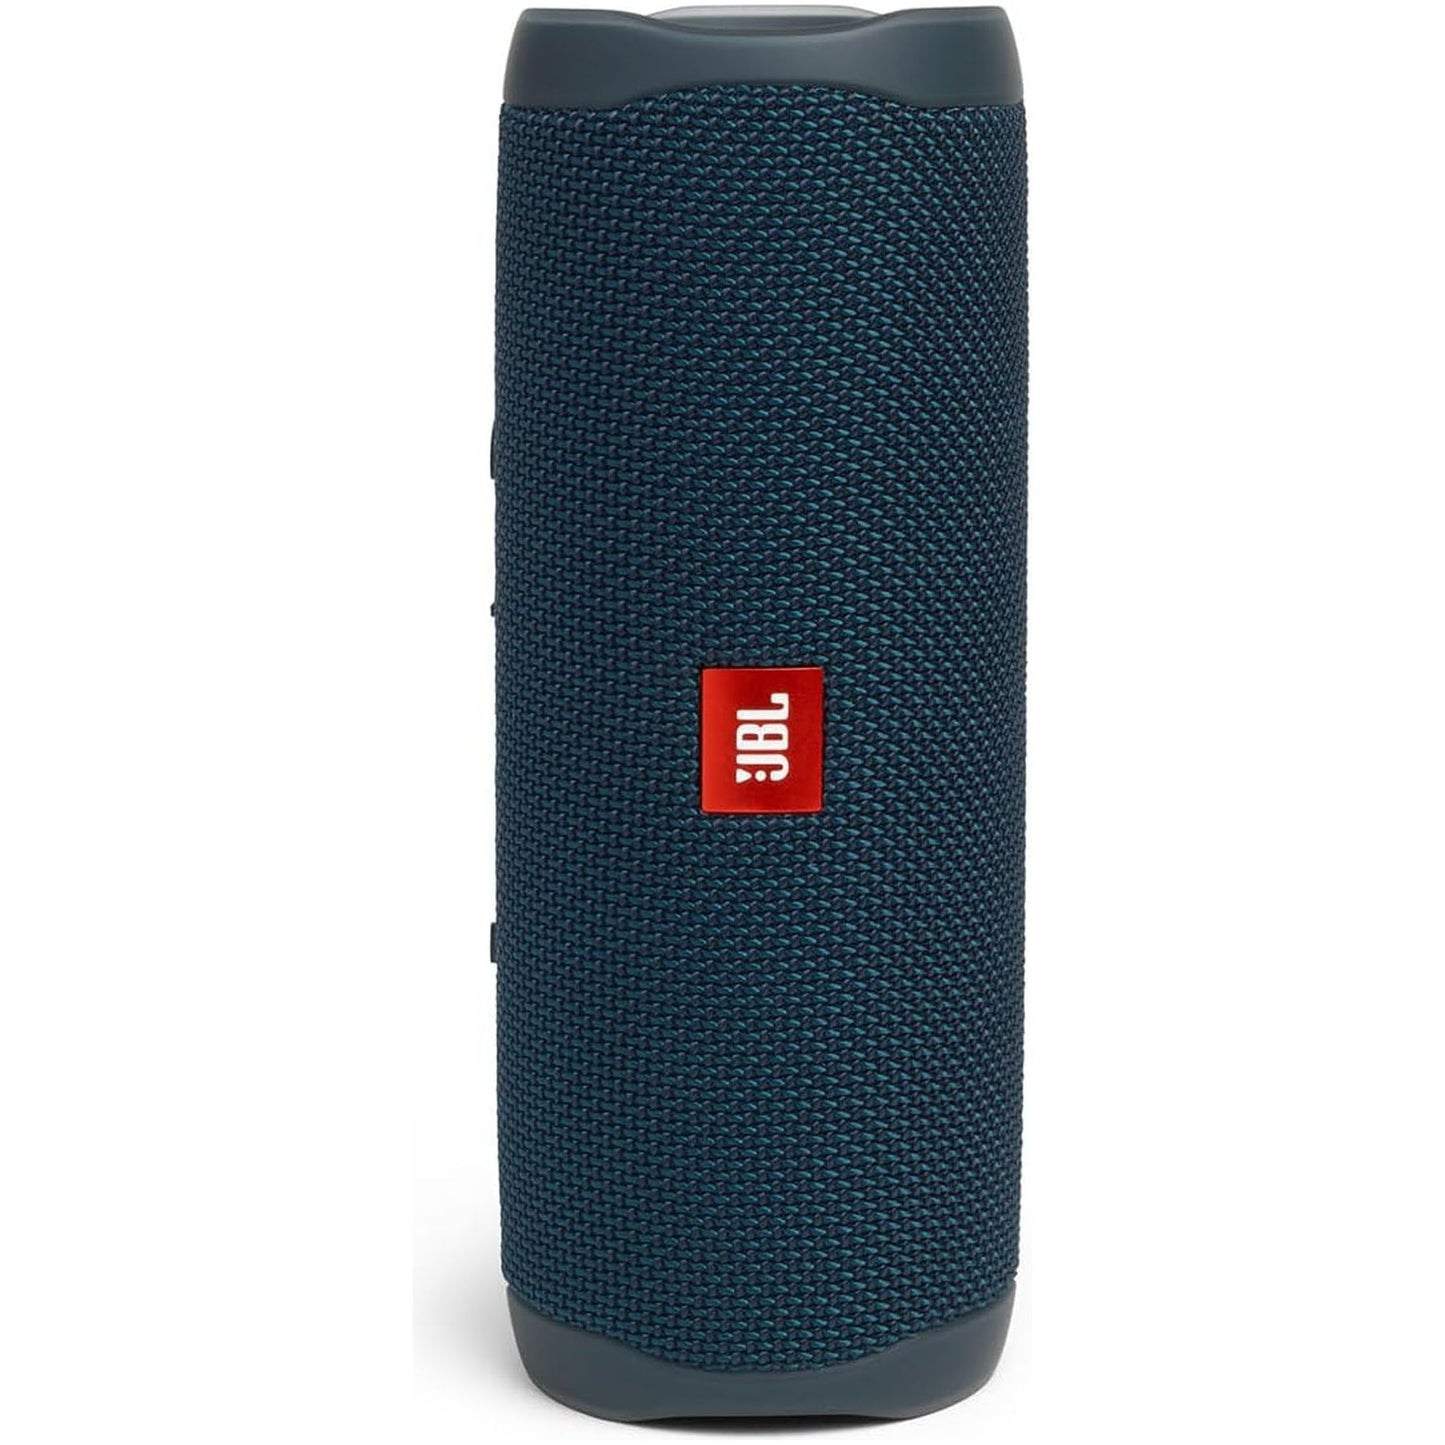 FLIP 5, Waterproof Portable Bluetooth Speaker, Blue, 3.6 X 3.6 X 8.5